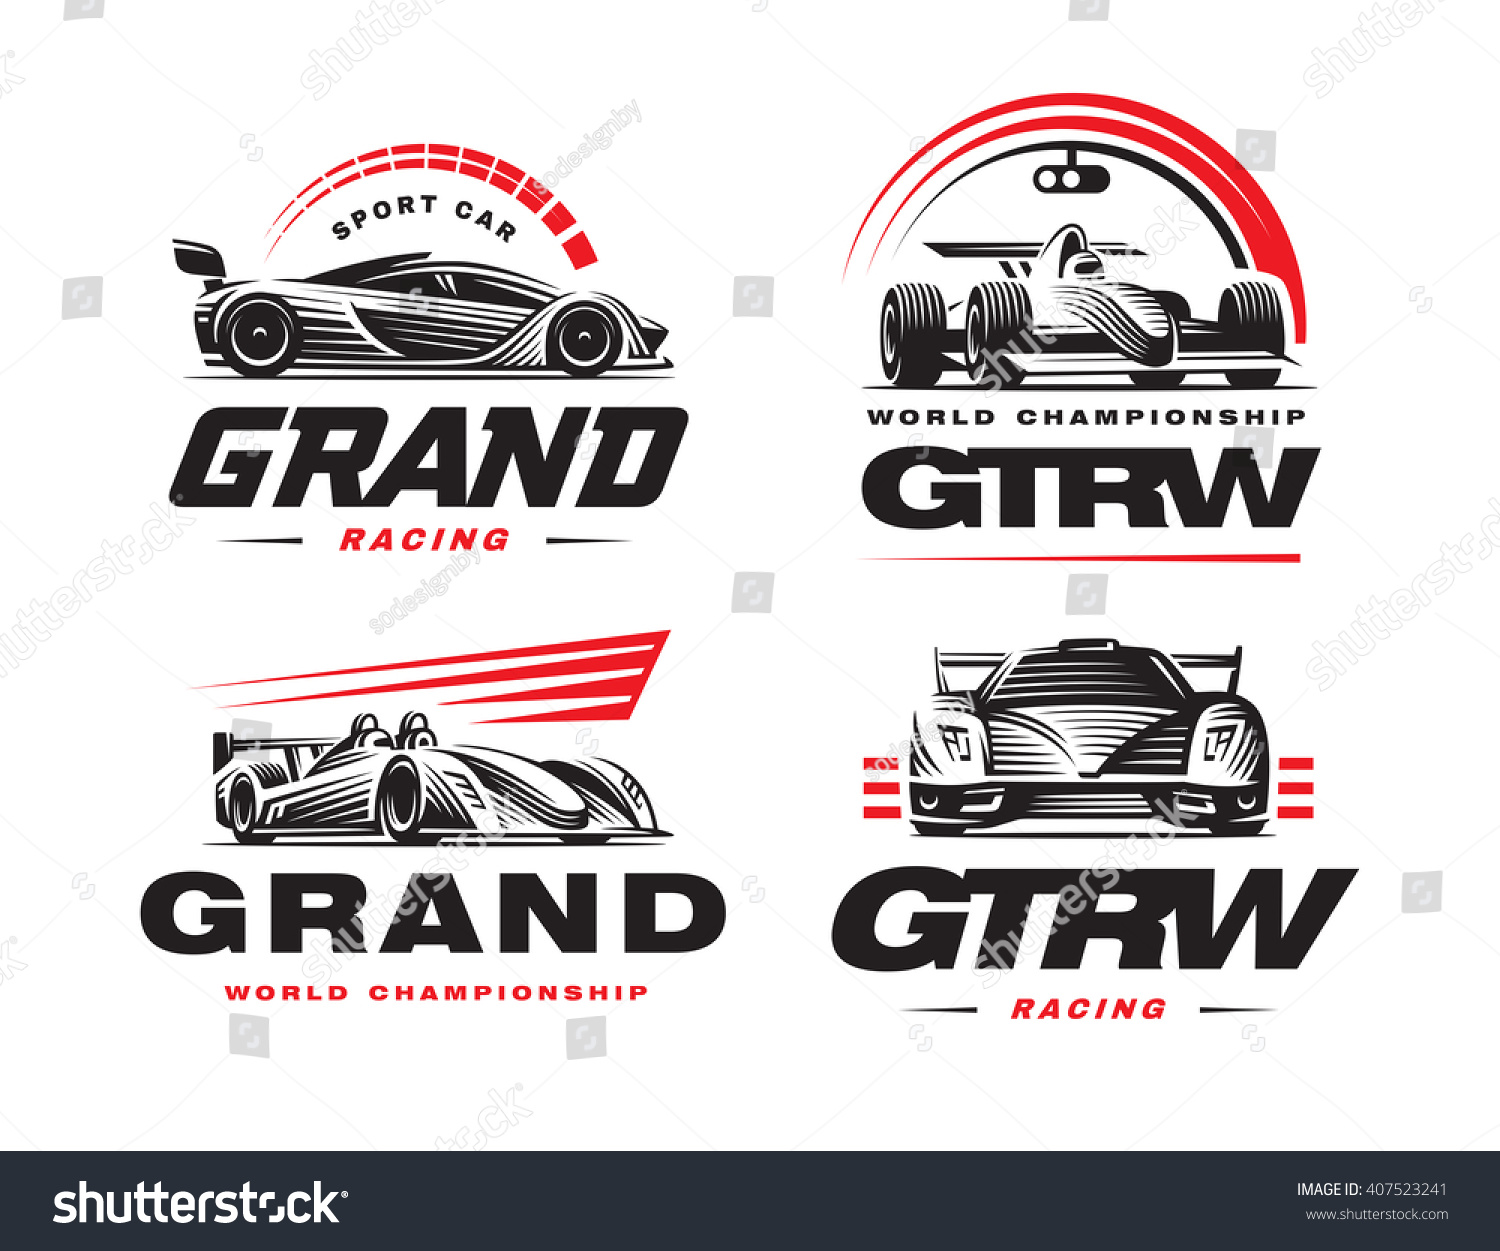 SVG of Sport cars logo set illustration on white background. svg